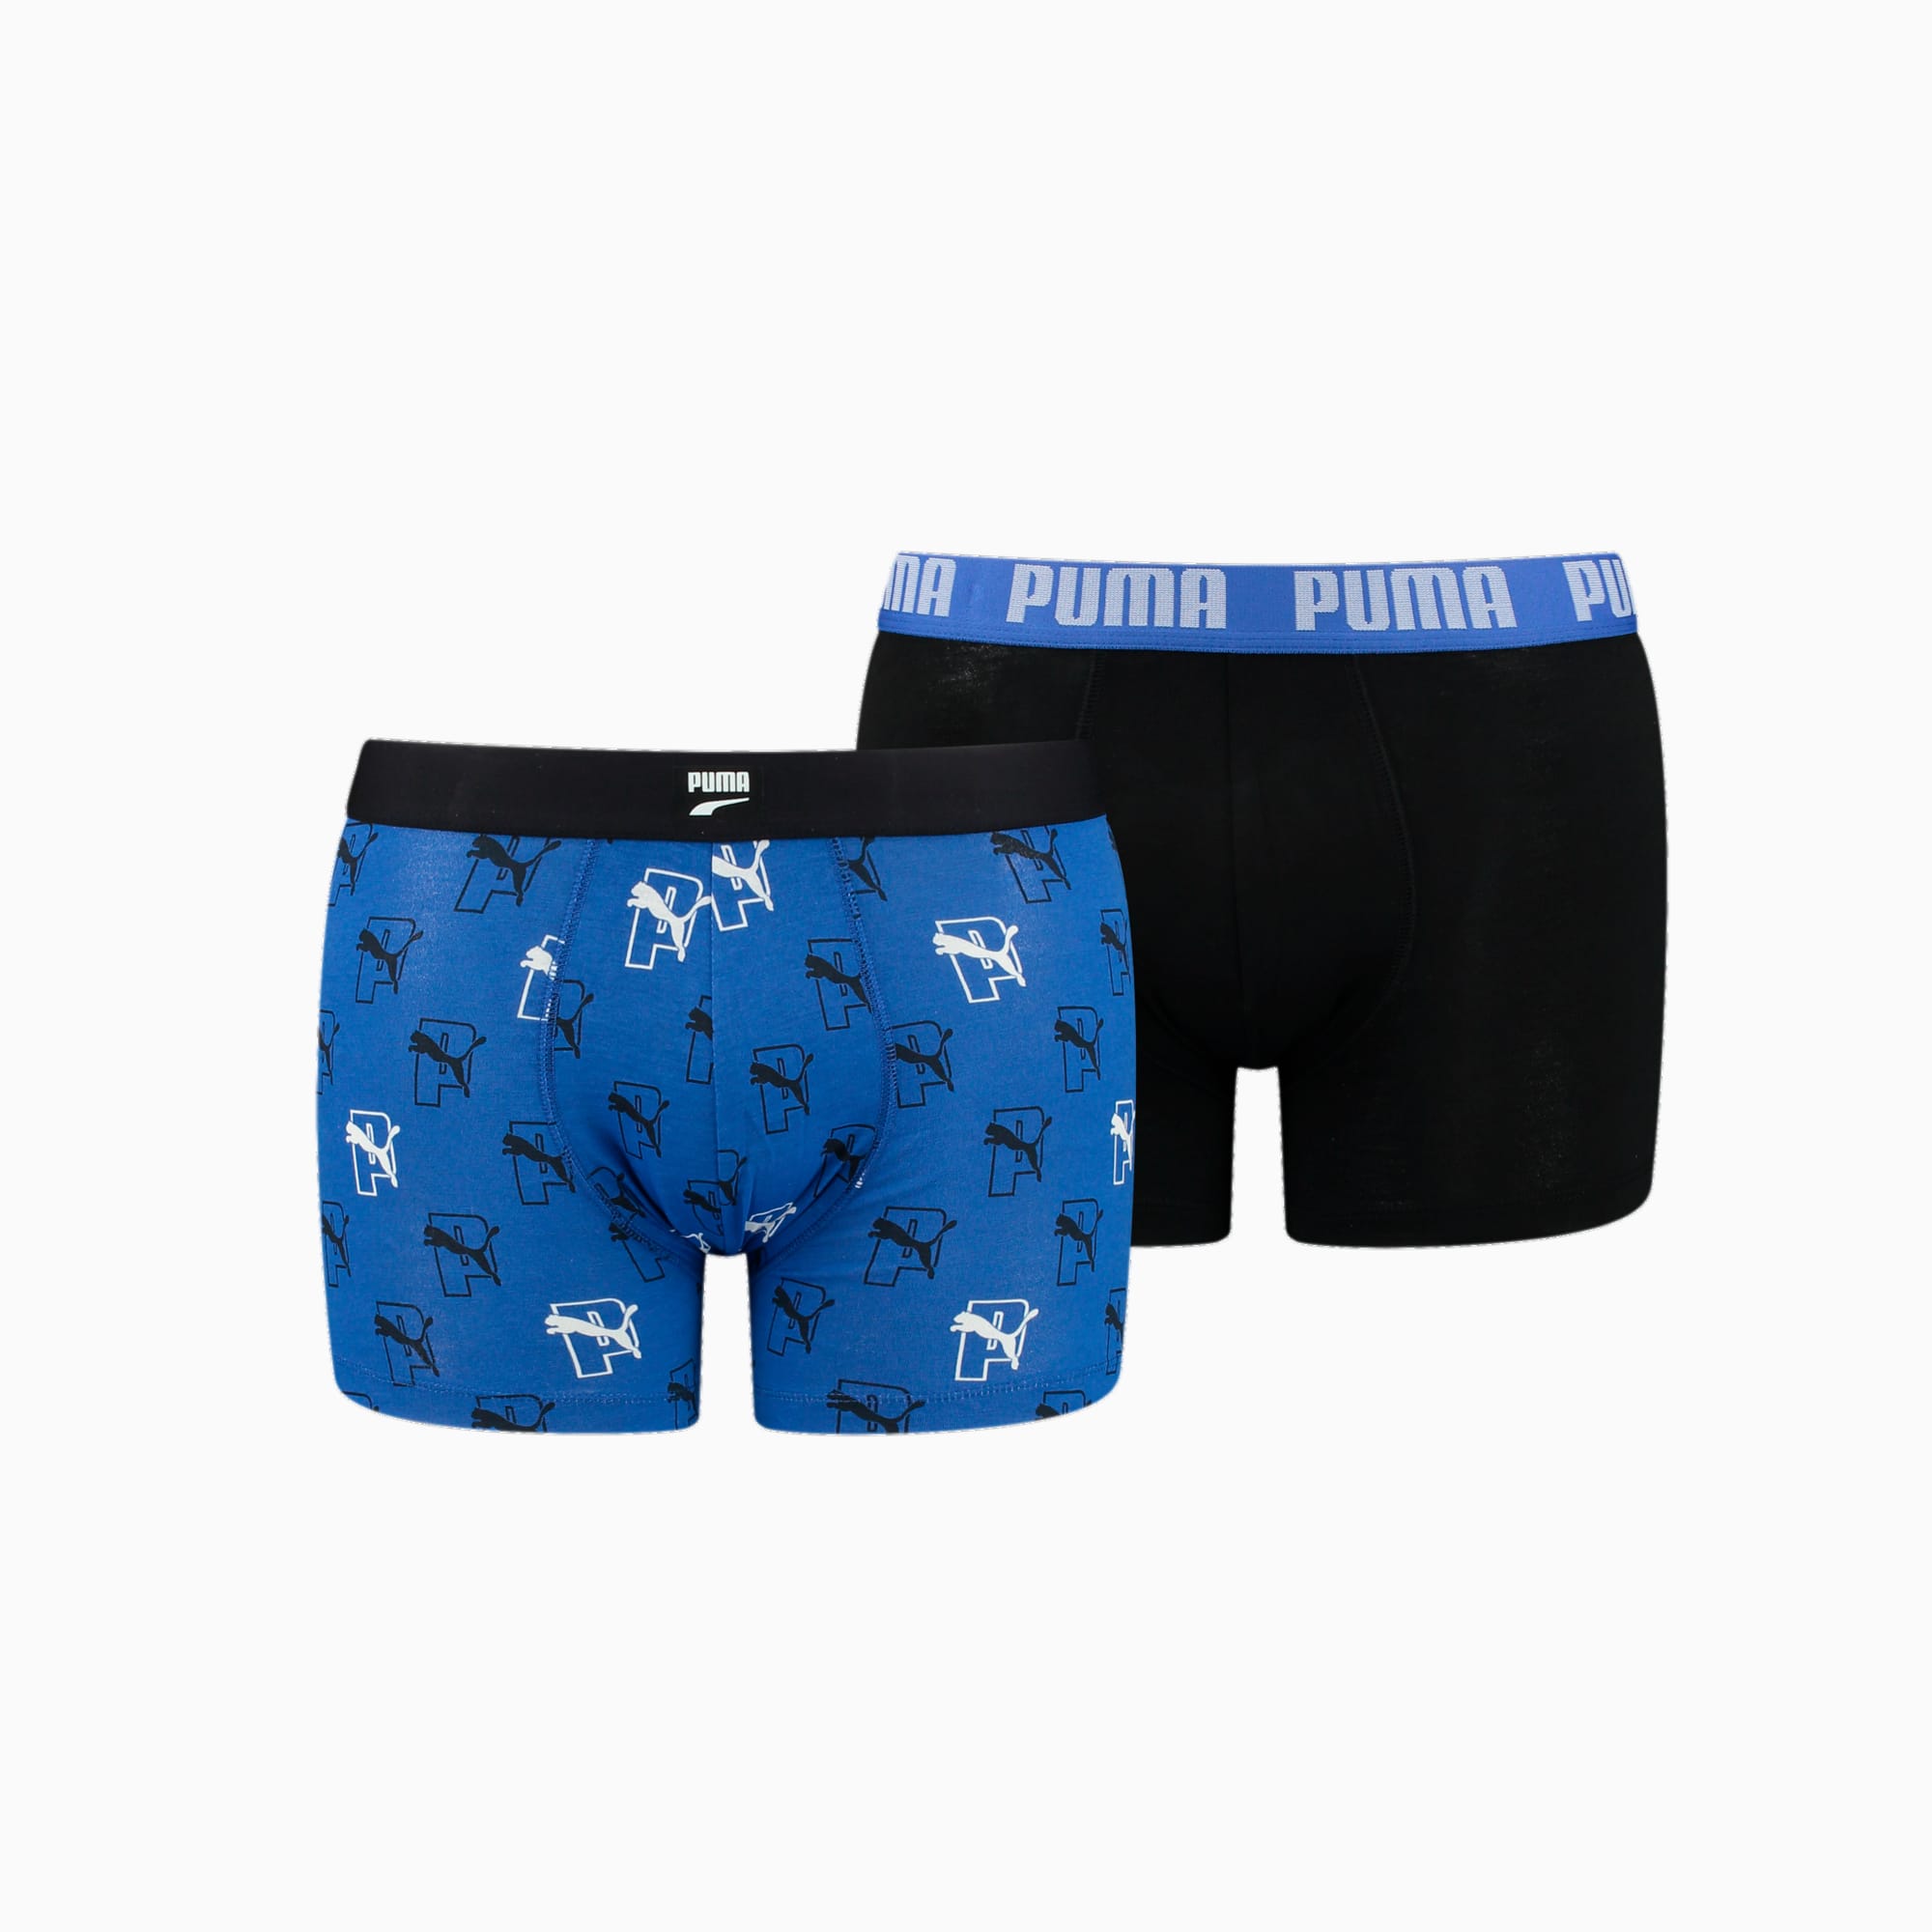 PUMA Herren Boxershorts Mit Allover-Cat-Logo-Print, 2er-Pack, Schwarz/Blau, Größe: S, Kleidung